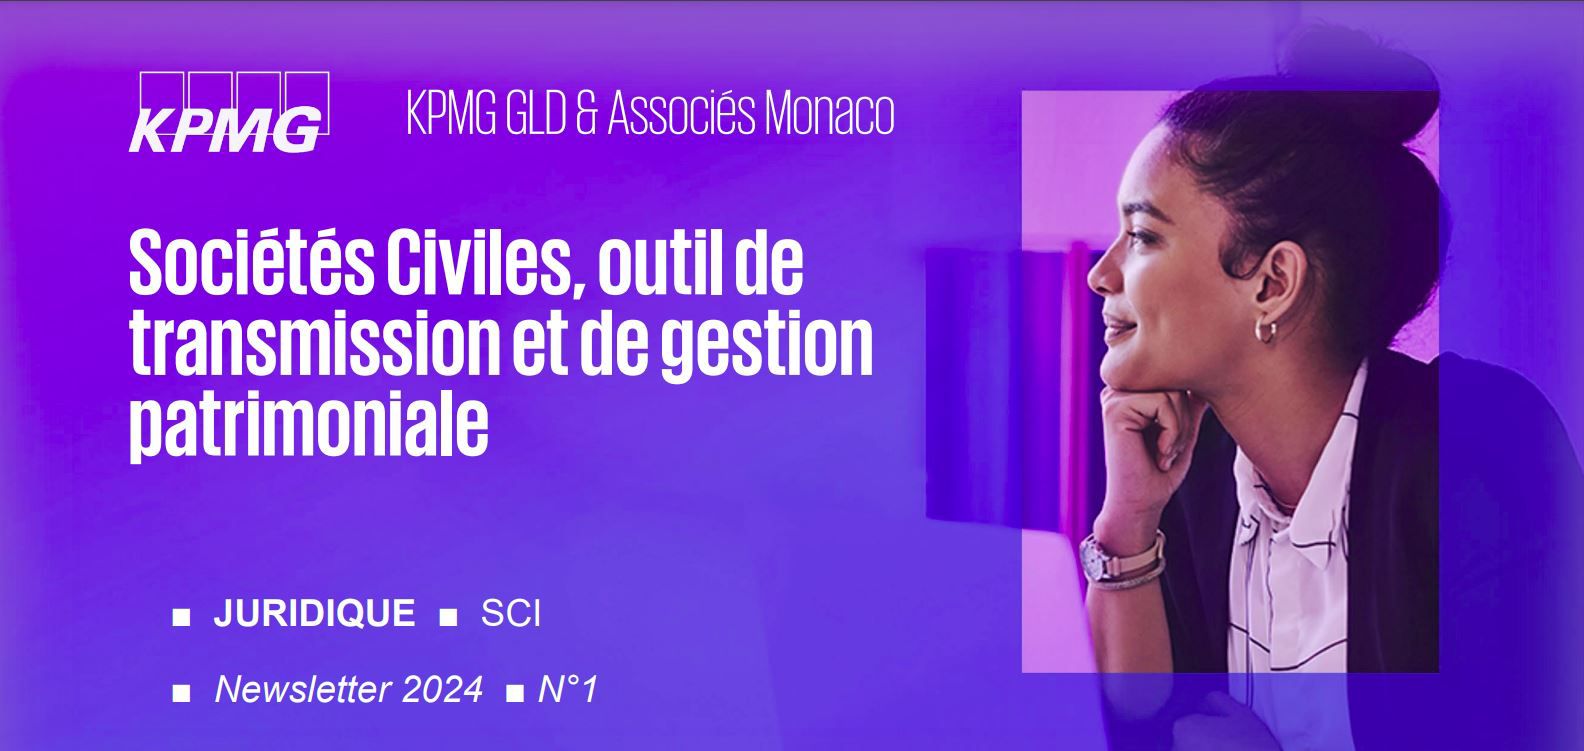 SCI ■ La Société Civile, un outil incontournable de transmission et de gestion patrimoniale en France et a Monaco